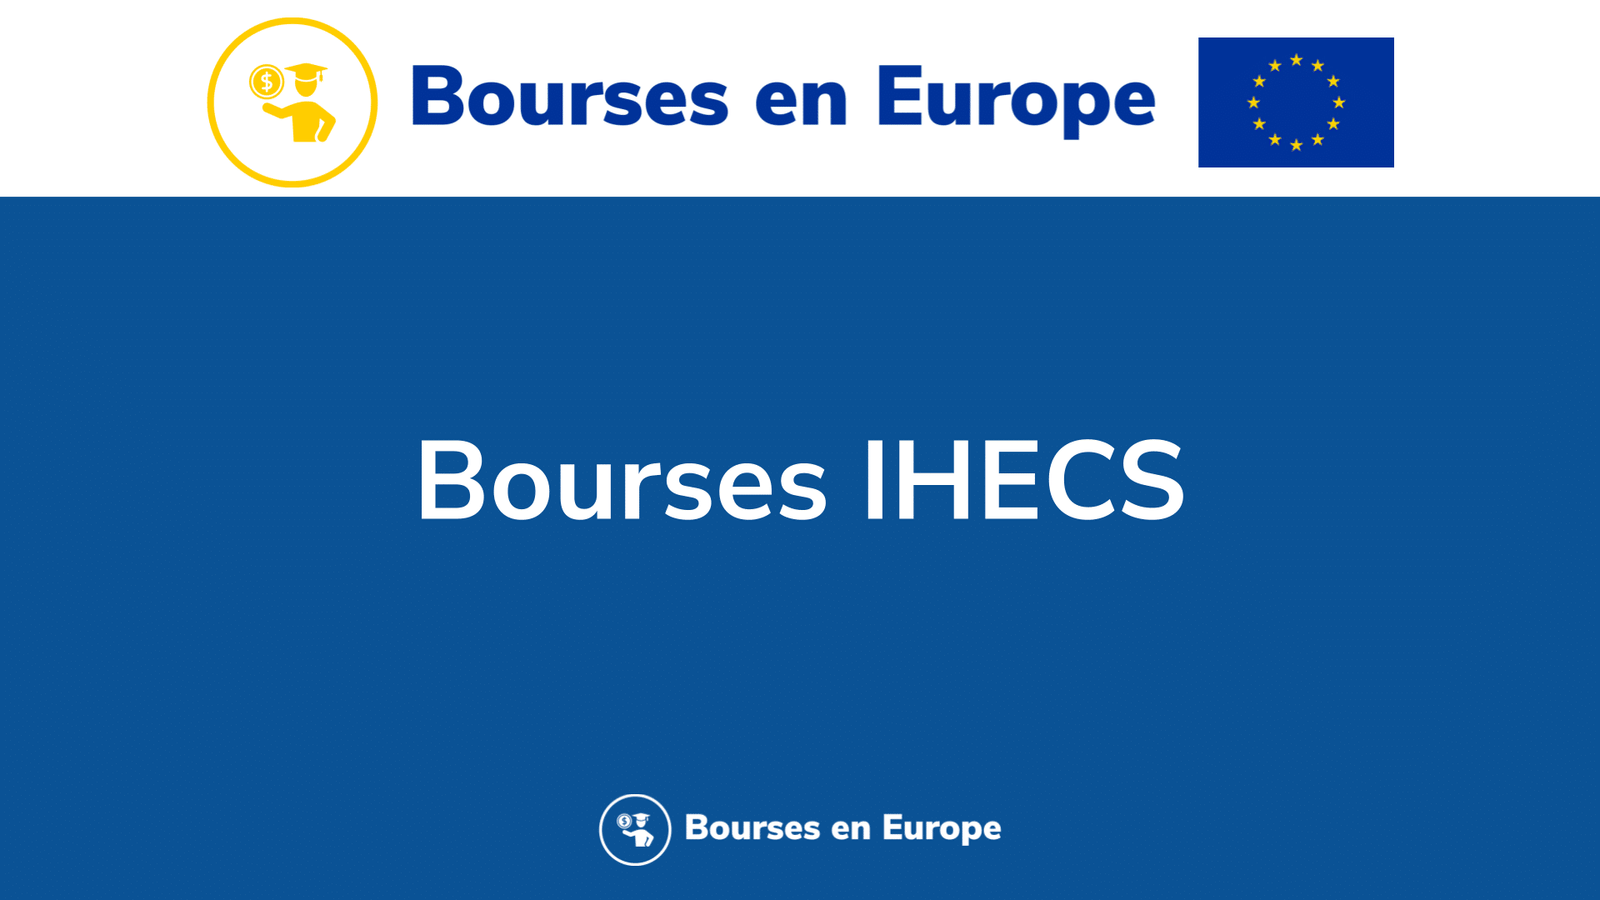 Bourses IHECS